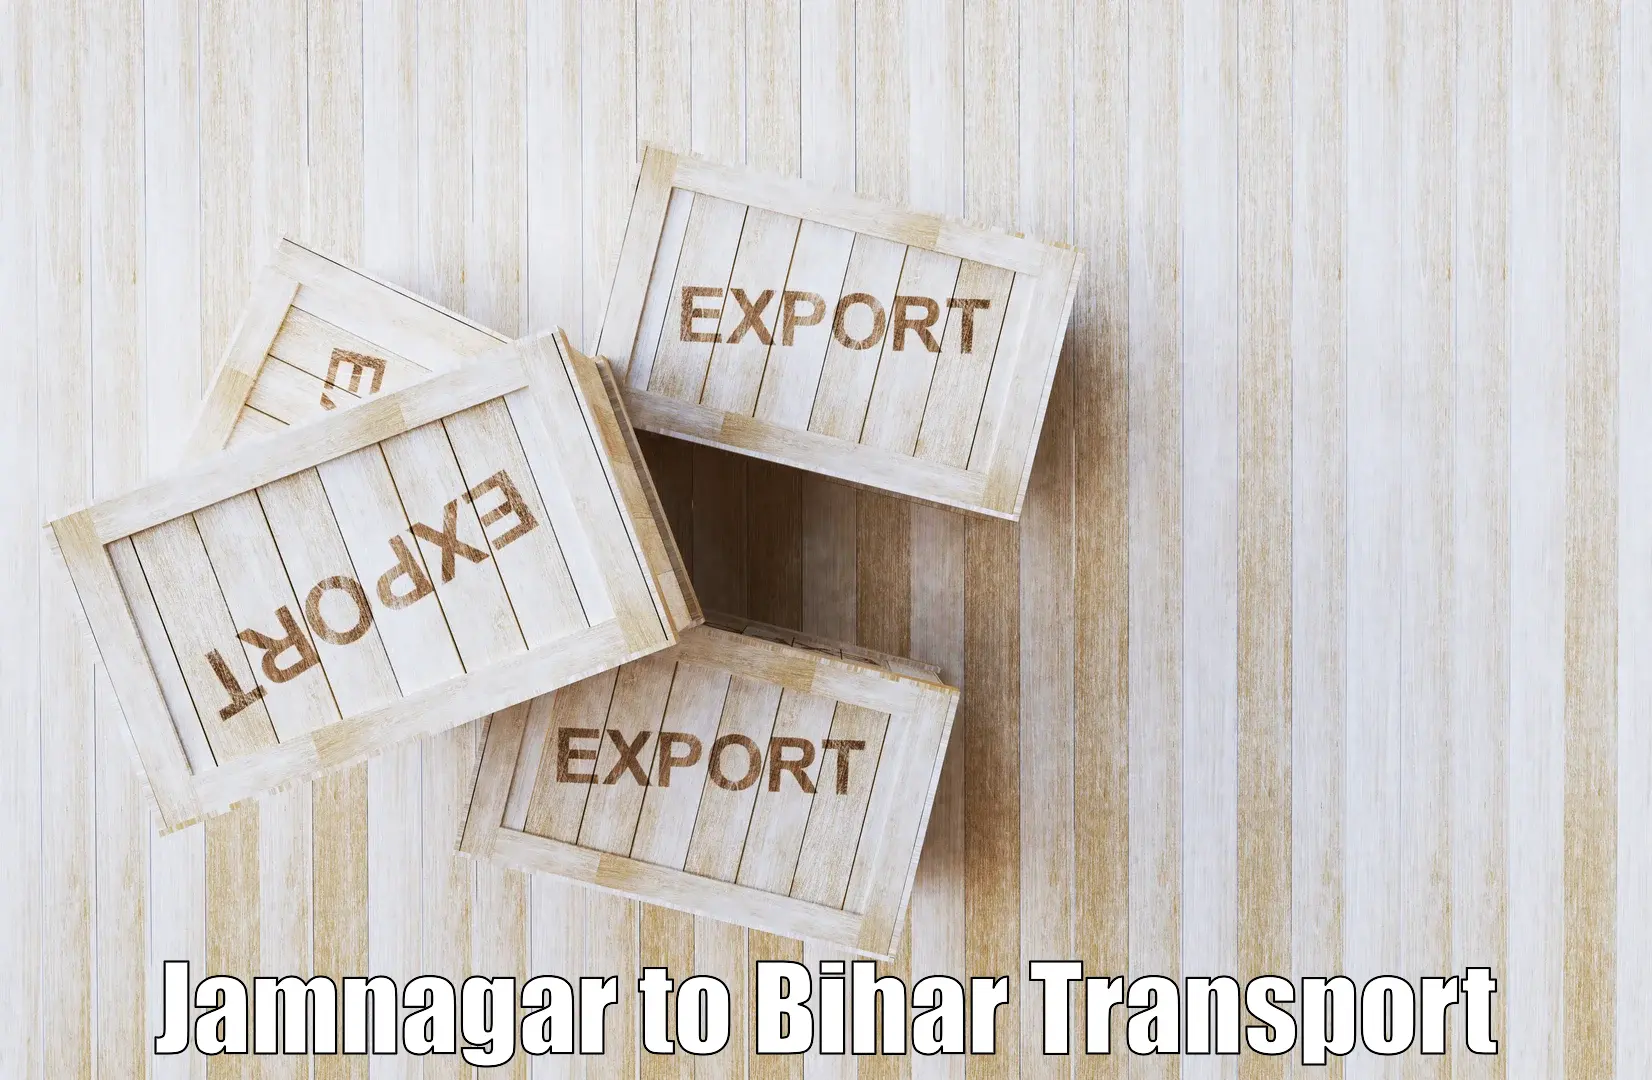 Daily transport service Jamnagar to Danapur